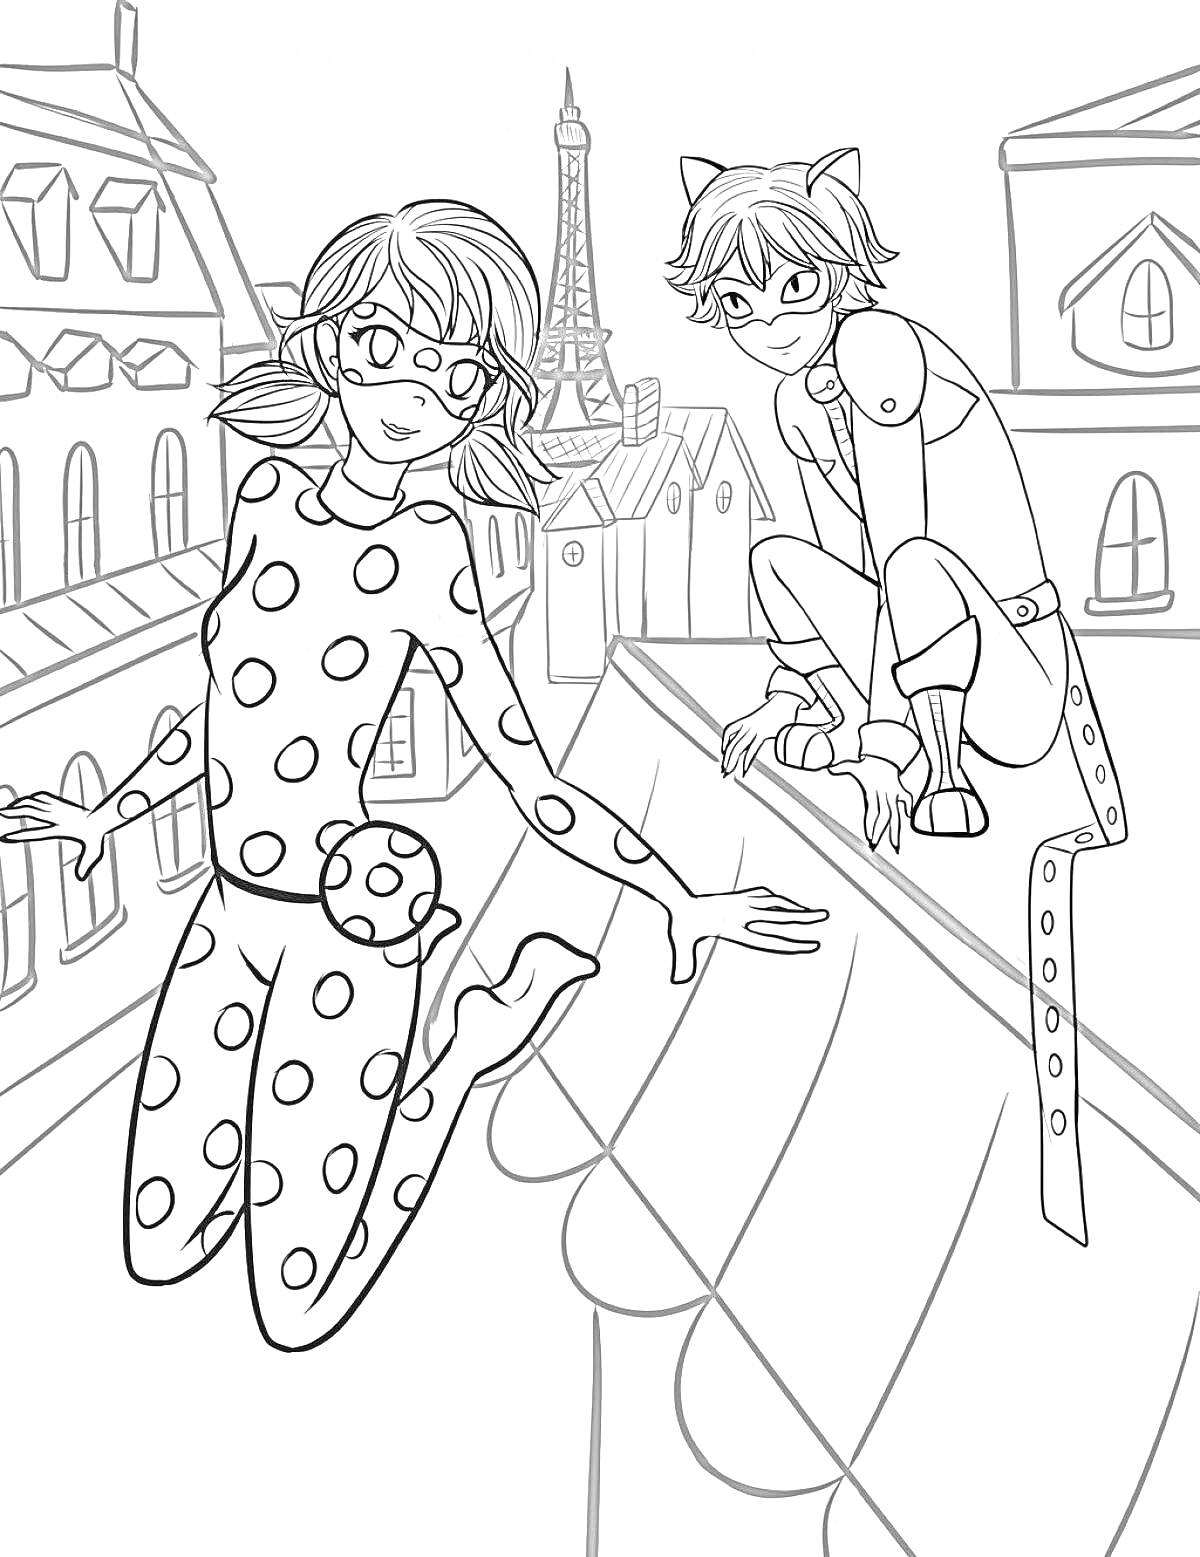 Леди Баг и Супер Кот на крыше домов в Париже